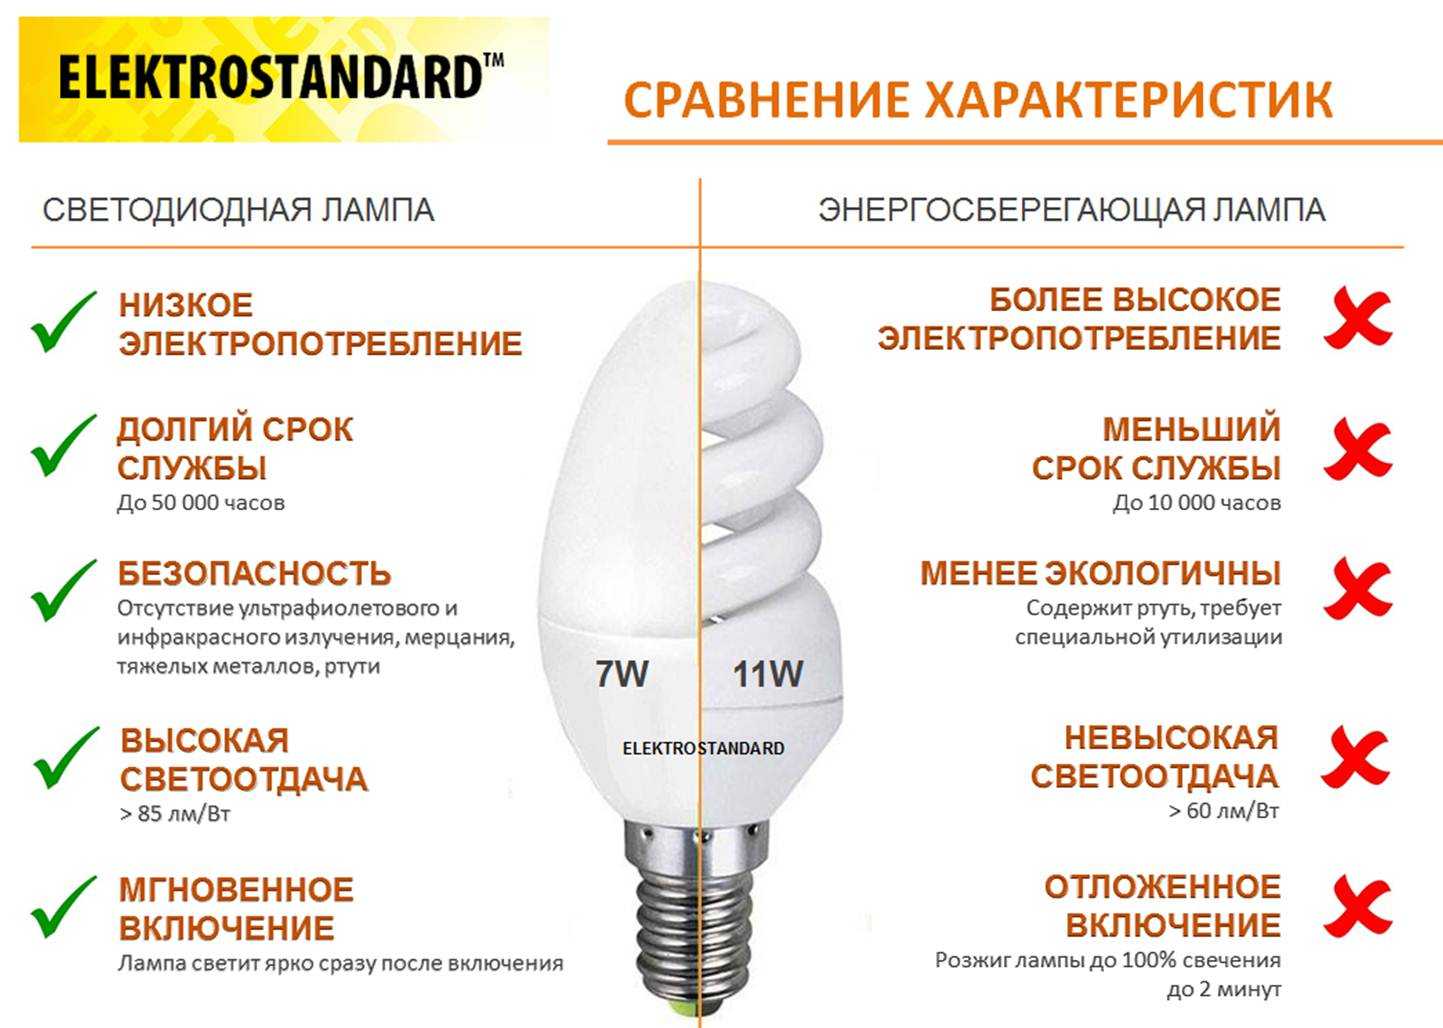 Кто же из нас откажется сэкономить Технический прогресс не стоит на месте и предлагает нам современные экономные лампы, которые долго светят и потребляют минимум энергии Разбираемся, как правильно выбрать энергосберегающие лампы для дома и квартиры